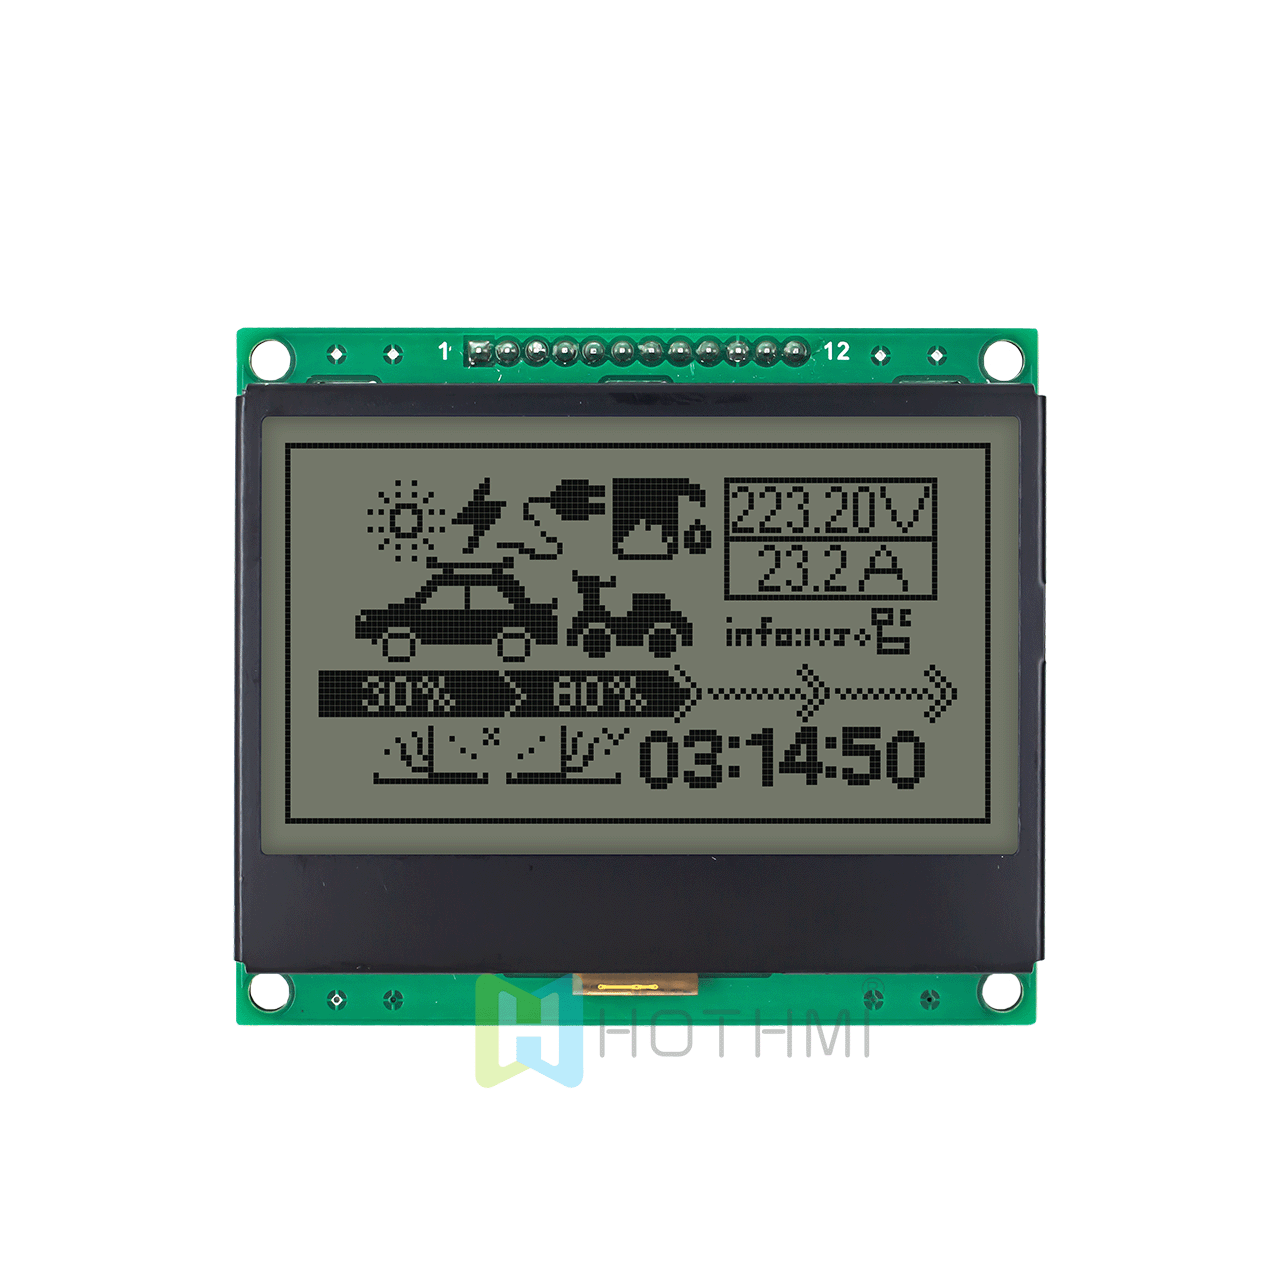 3 英寸 128x64 图形 LCD 显示模块 | 128x64图形液晶模组 |  SPI 接口 | 白底灰字 | FSTN 正向 | 半透偏光片